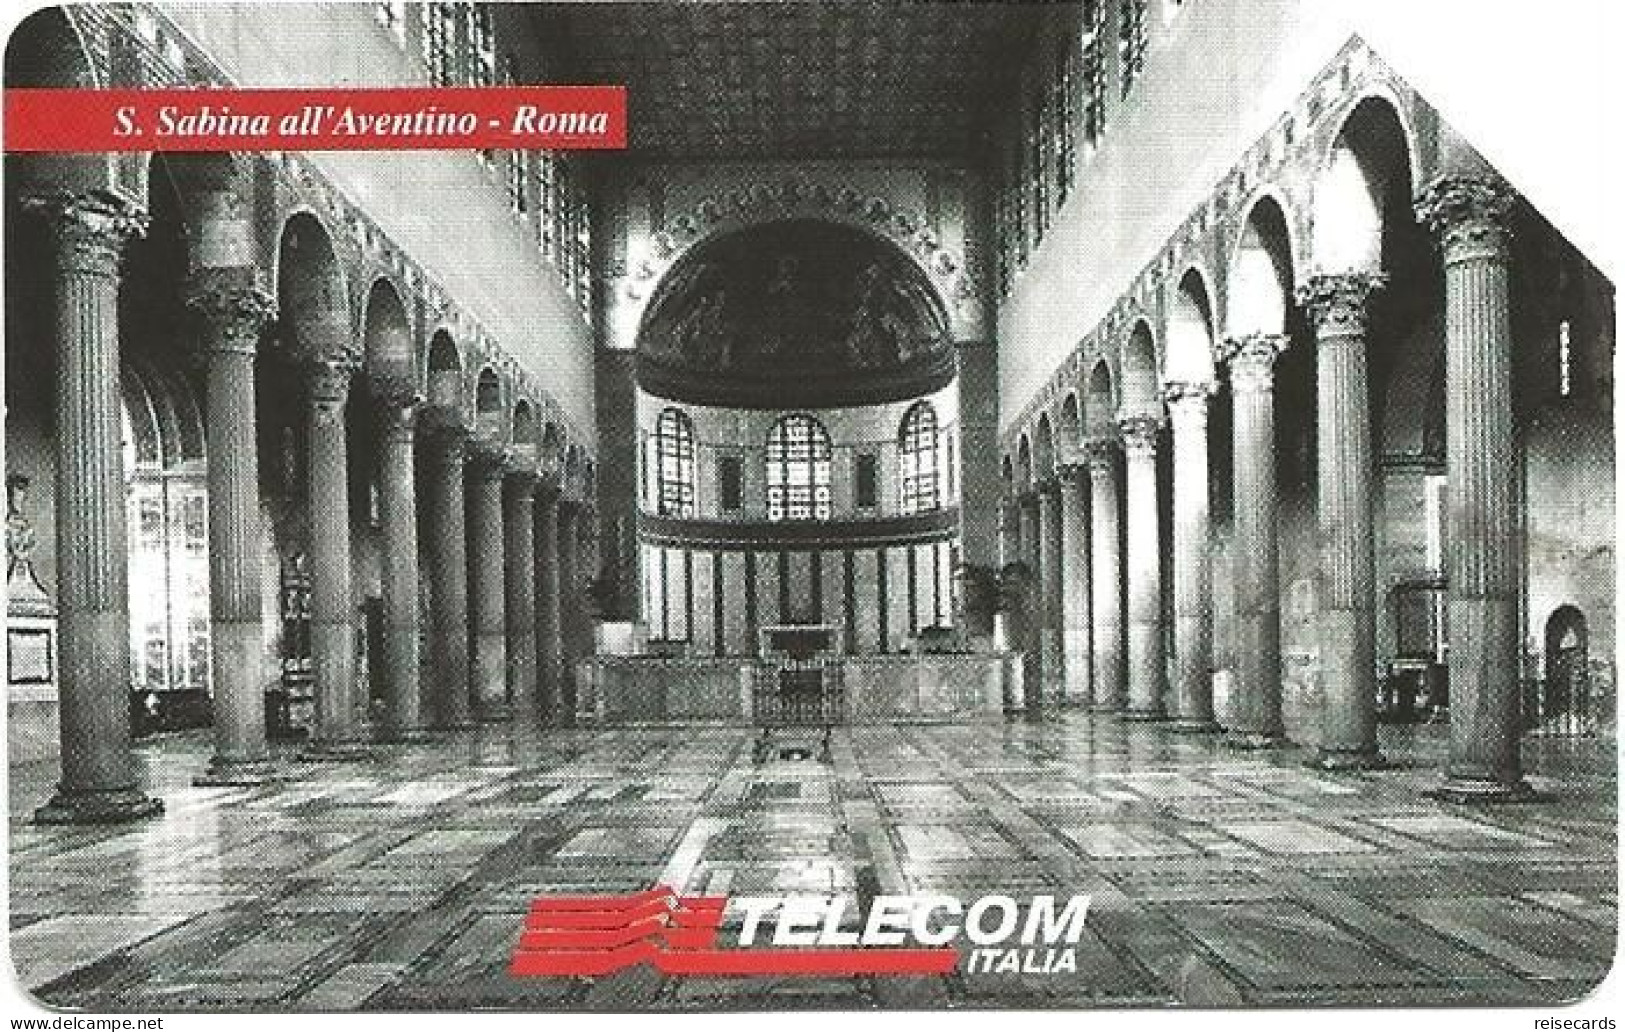 Italy: Telecom Italia - Il Culto Dell'Arte, S. Sabina All'Aventino Roma - Openbare Reclame